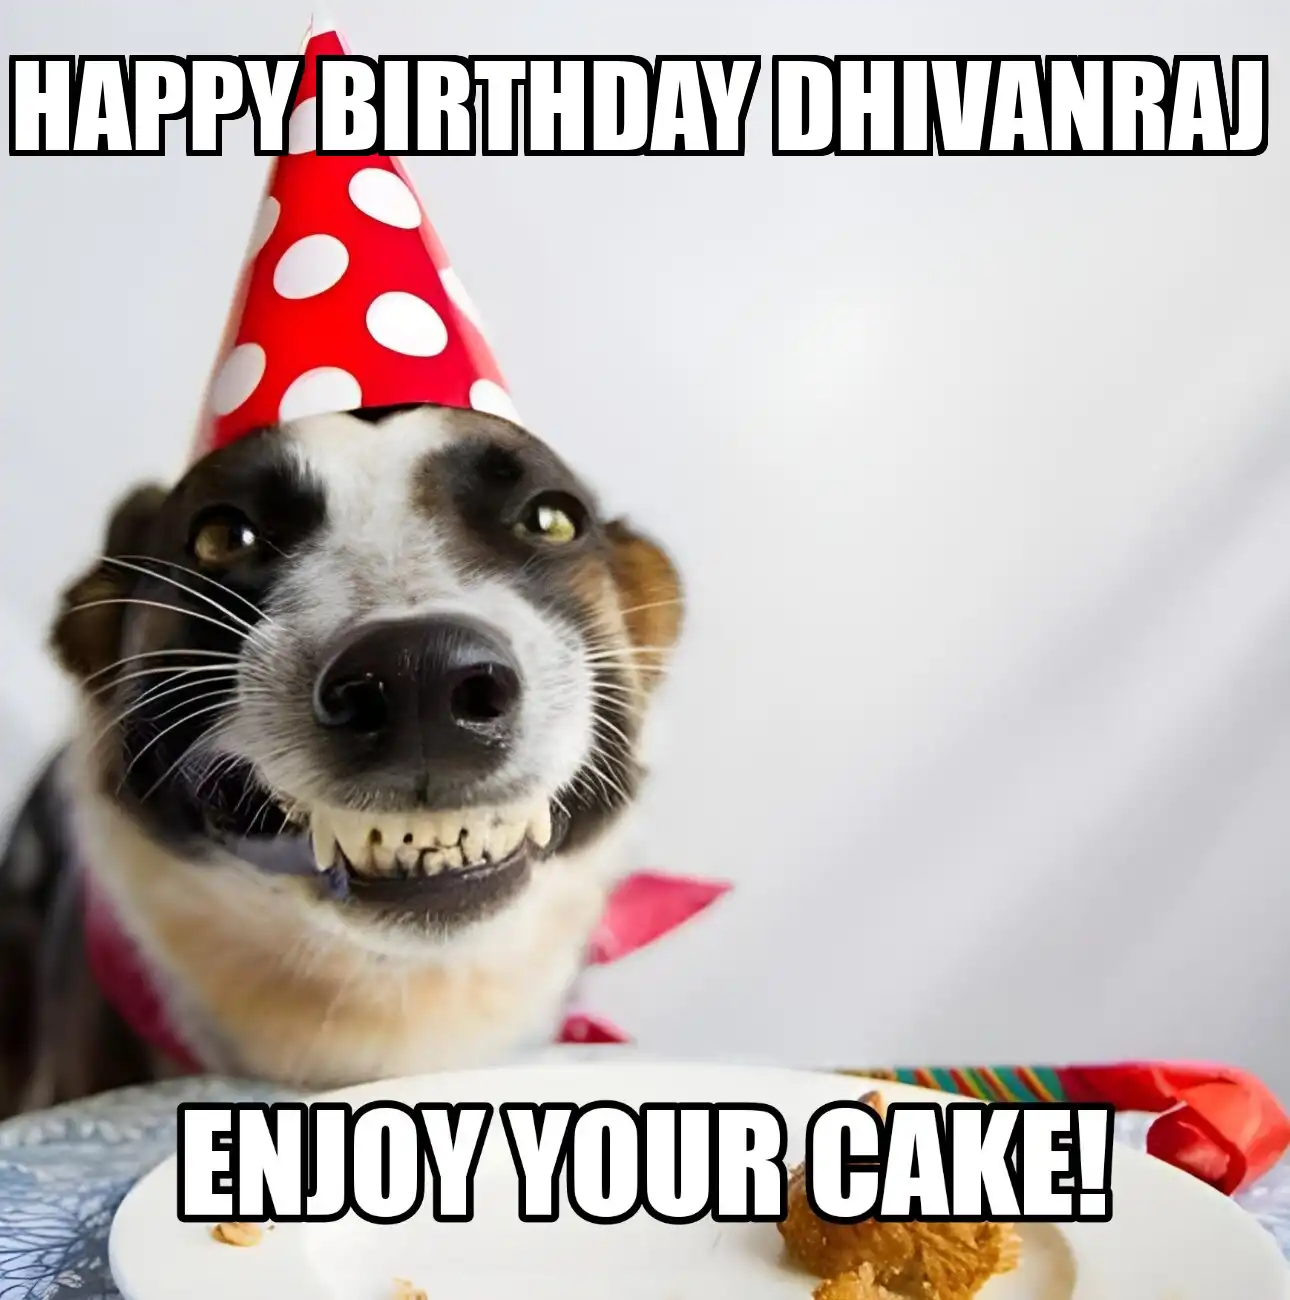 Happy Birthday Dhivanraj Enjoy Your Cake Dog Meme